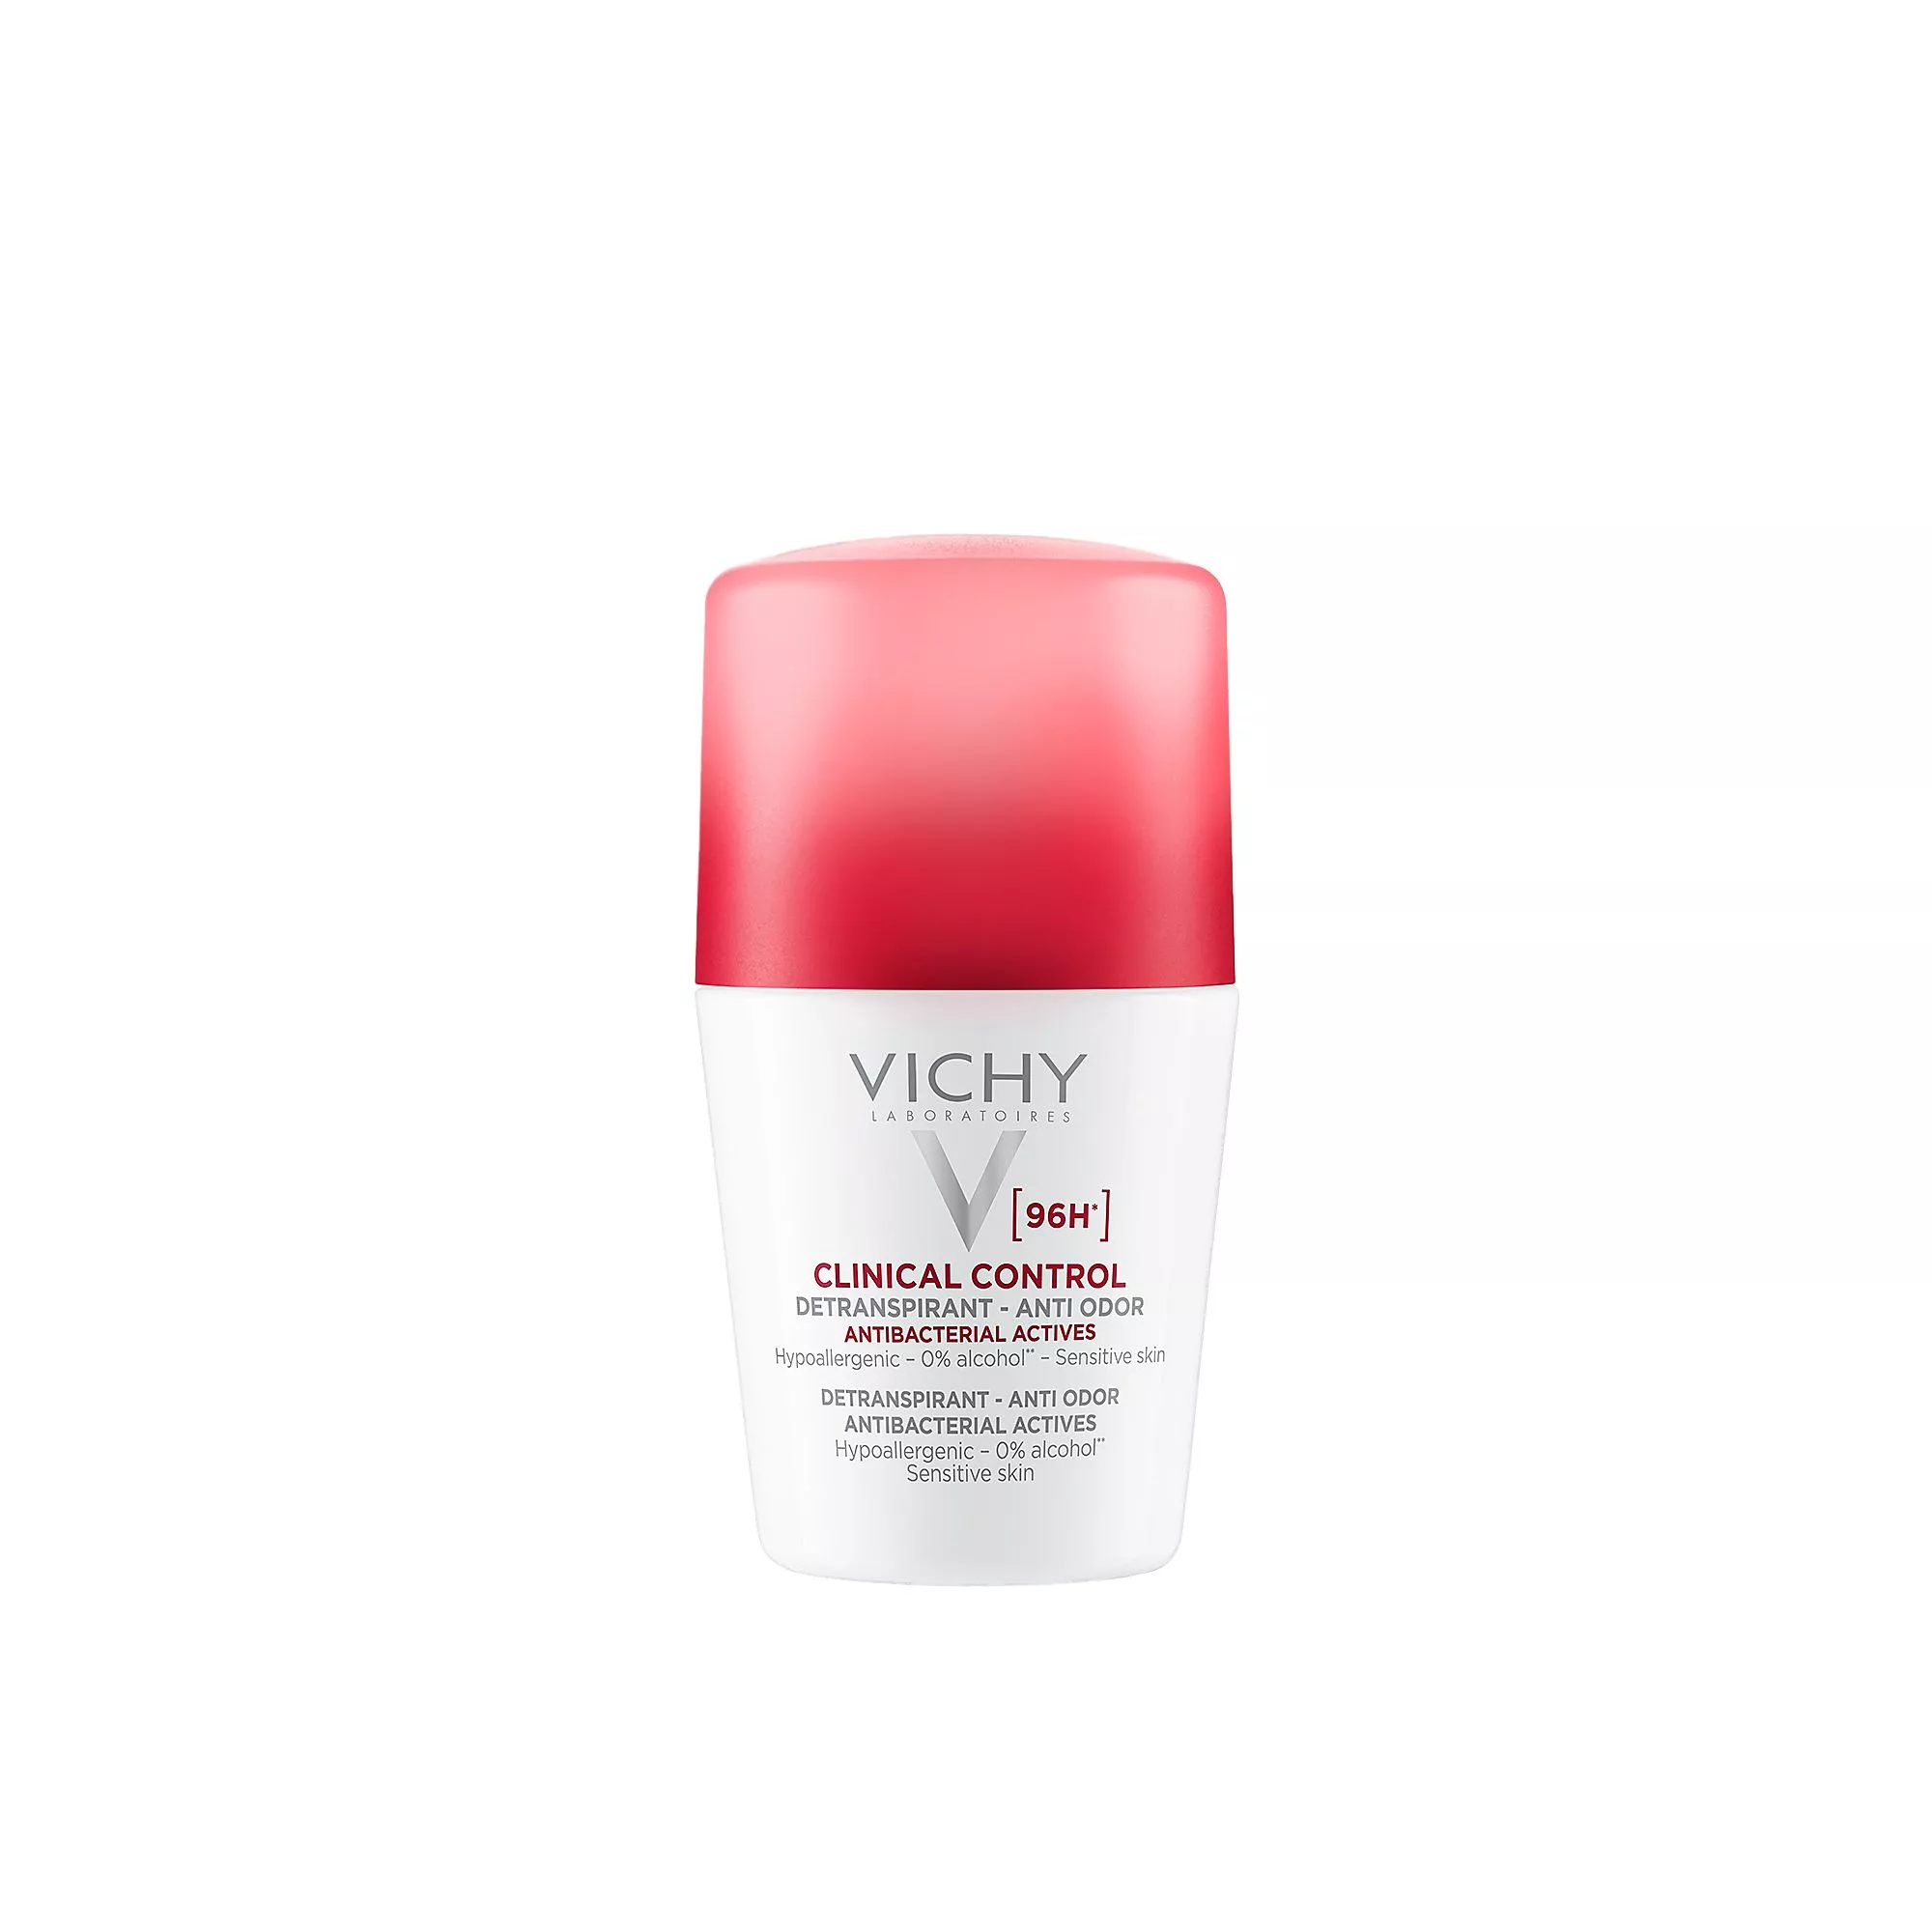 Miedontuoksuinen Vichy Clinical Control Roll-on Antiperspirant Deodorant sisältää runsaasti hikoilua hillitseviä aktiivisia ainesosia ja antibakteerista sinkkiä, 50 ml 15 e.